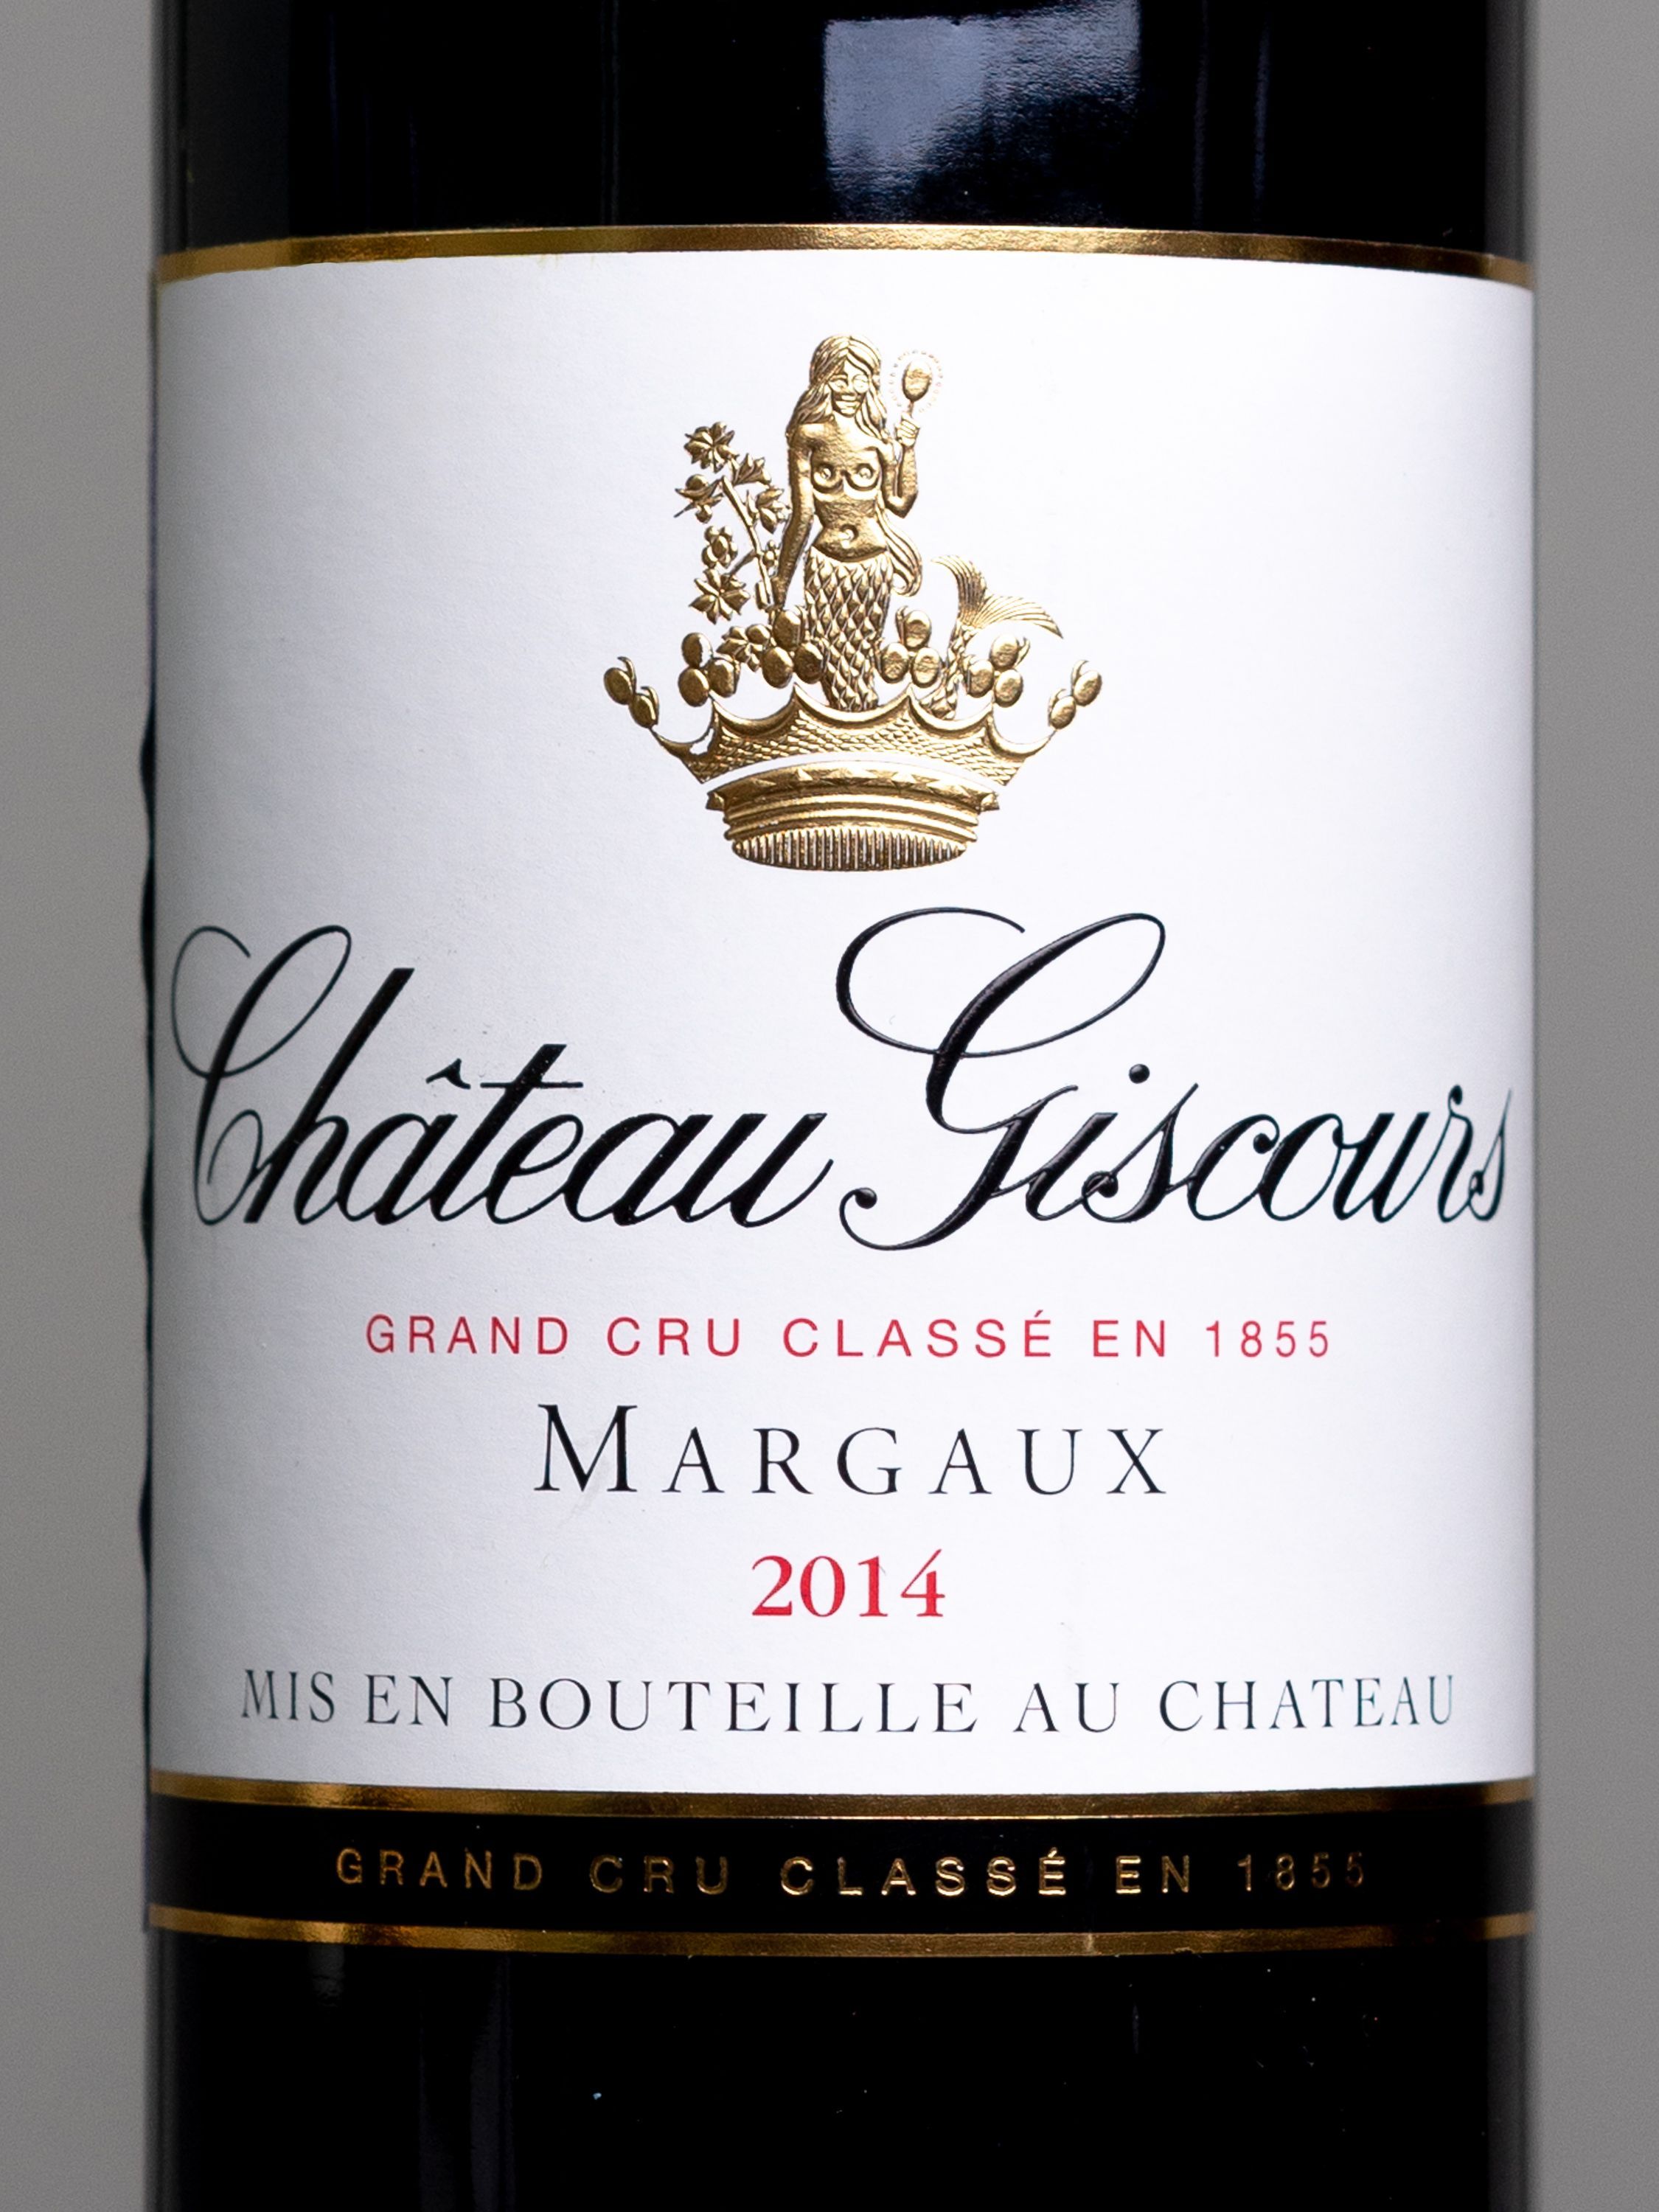 Вино Chateau Giscours Margaux Grand Cru Classe 2014 / Шато Жискур Марго Гран Крю Классе 2014